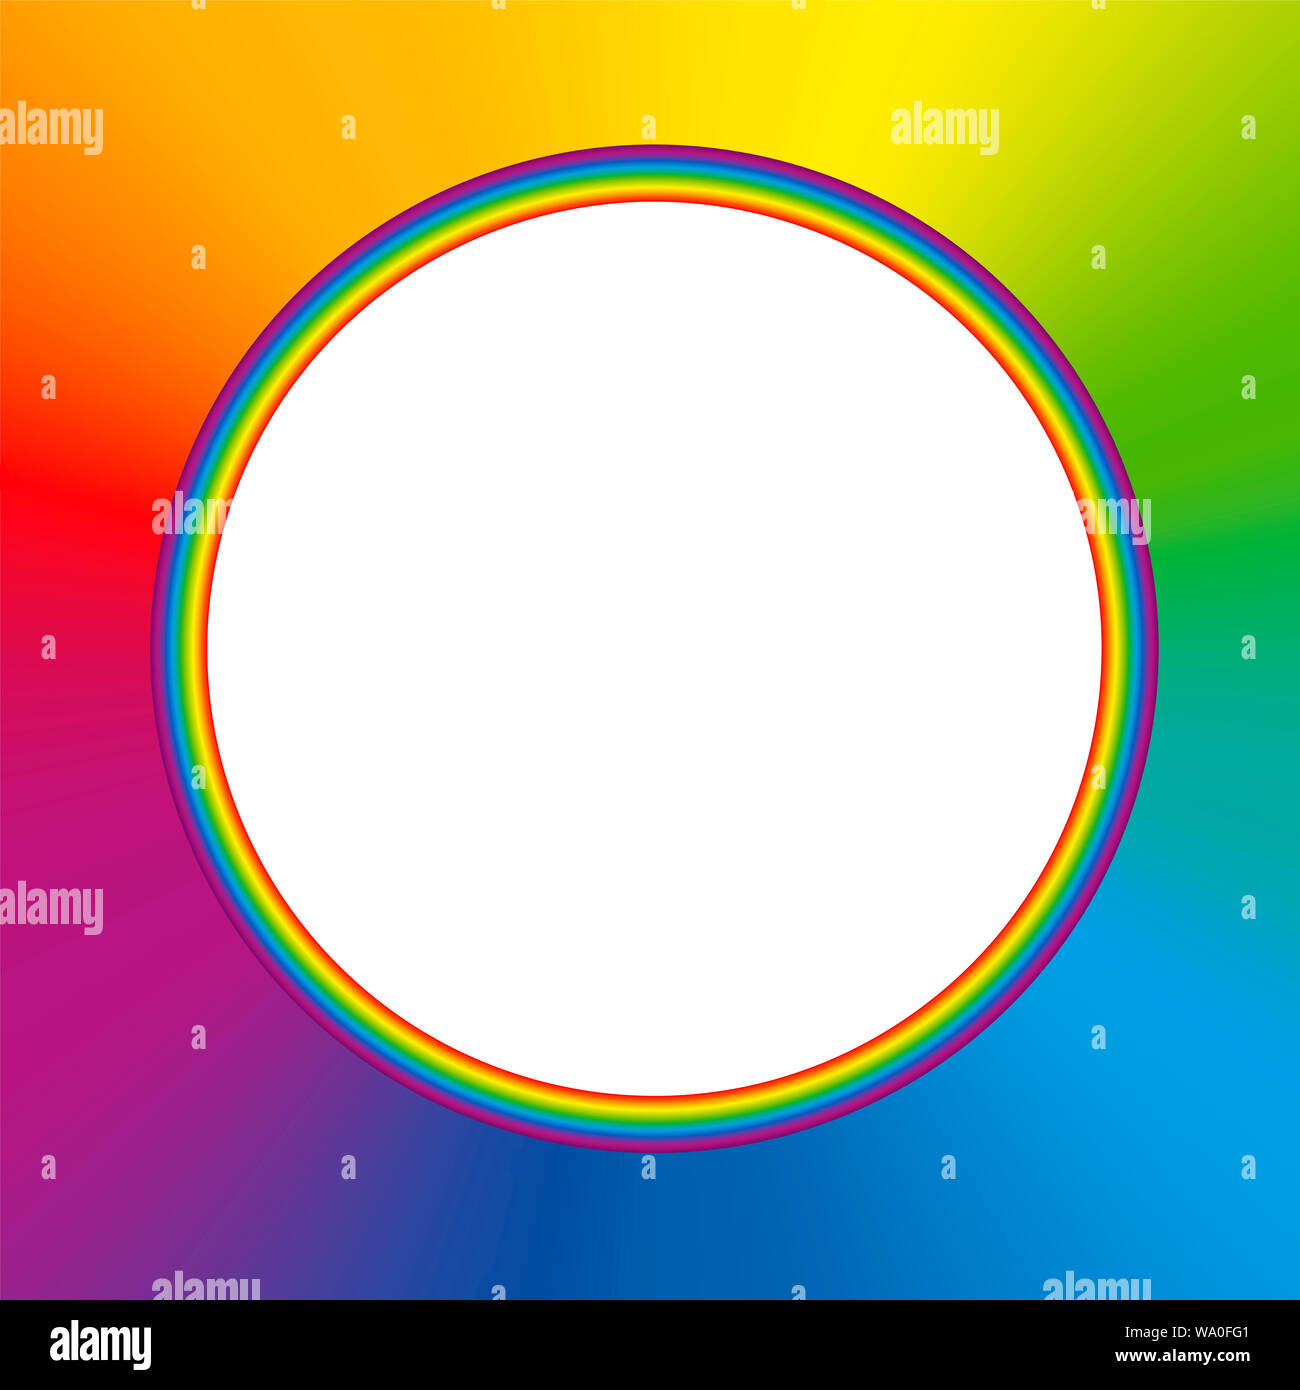 Color arcobaleno cornice rotonda con colorati rainbow gradiente dello sfondo bianco e centro vuoto. Foto Stock